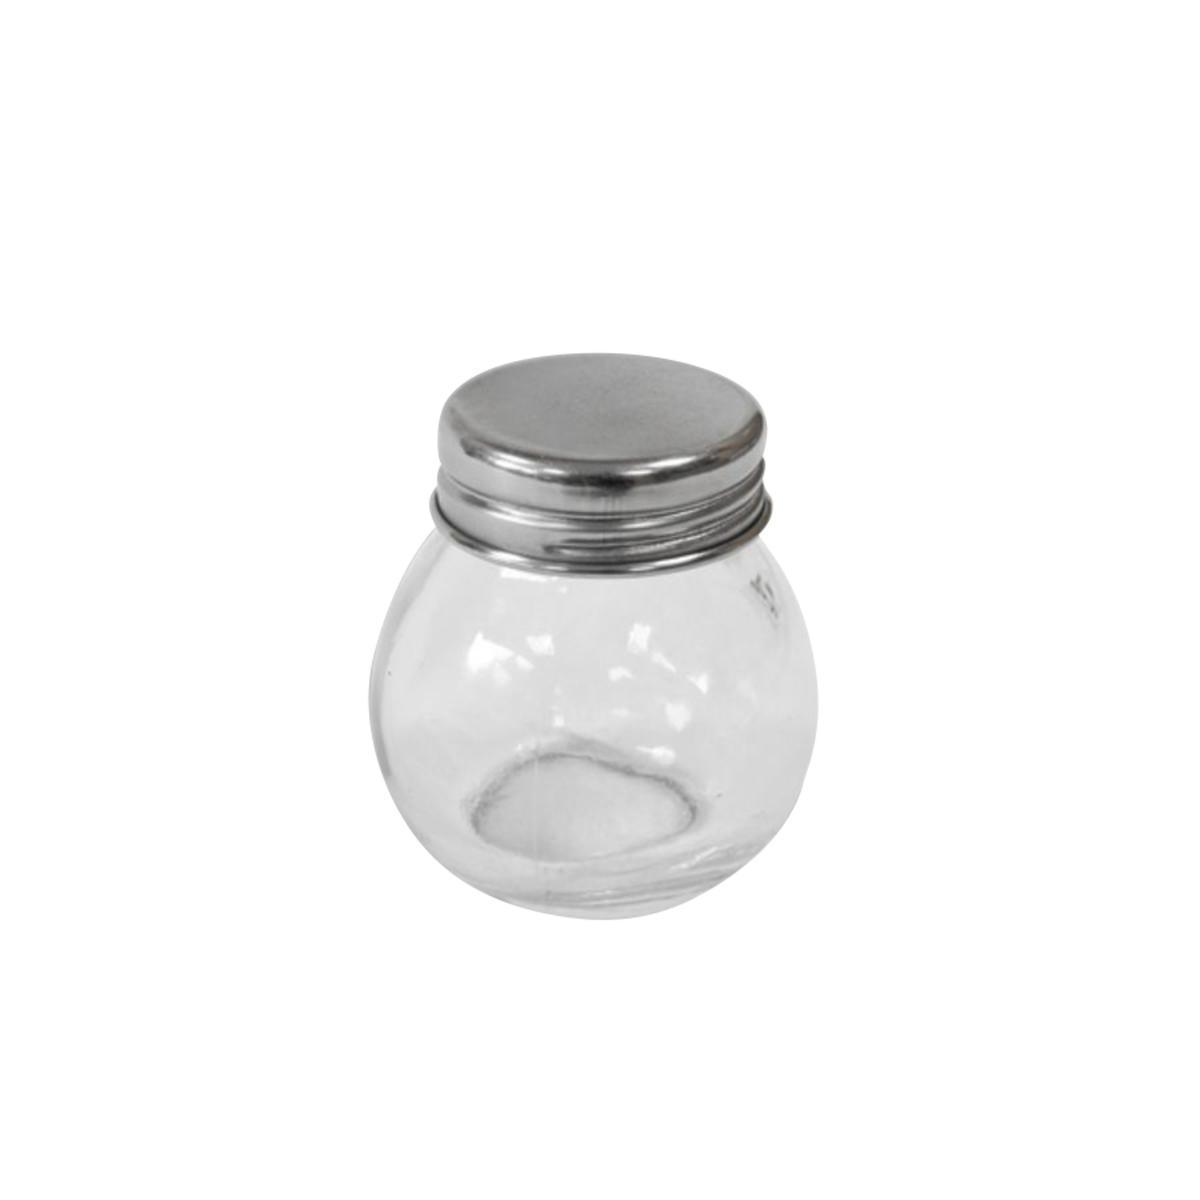 Pot en verre avec un couvercle en métal - Verre et métal - 5 x 5,2 cm - Transparent